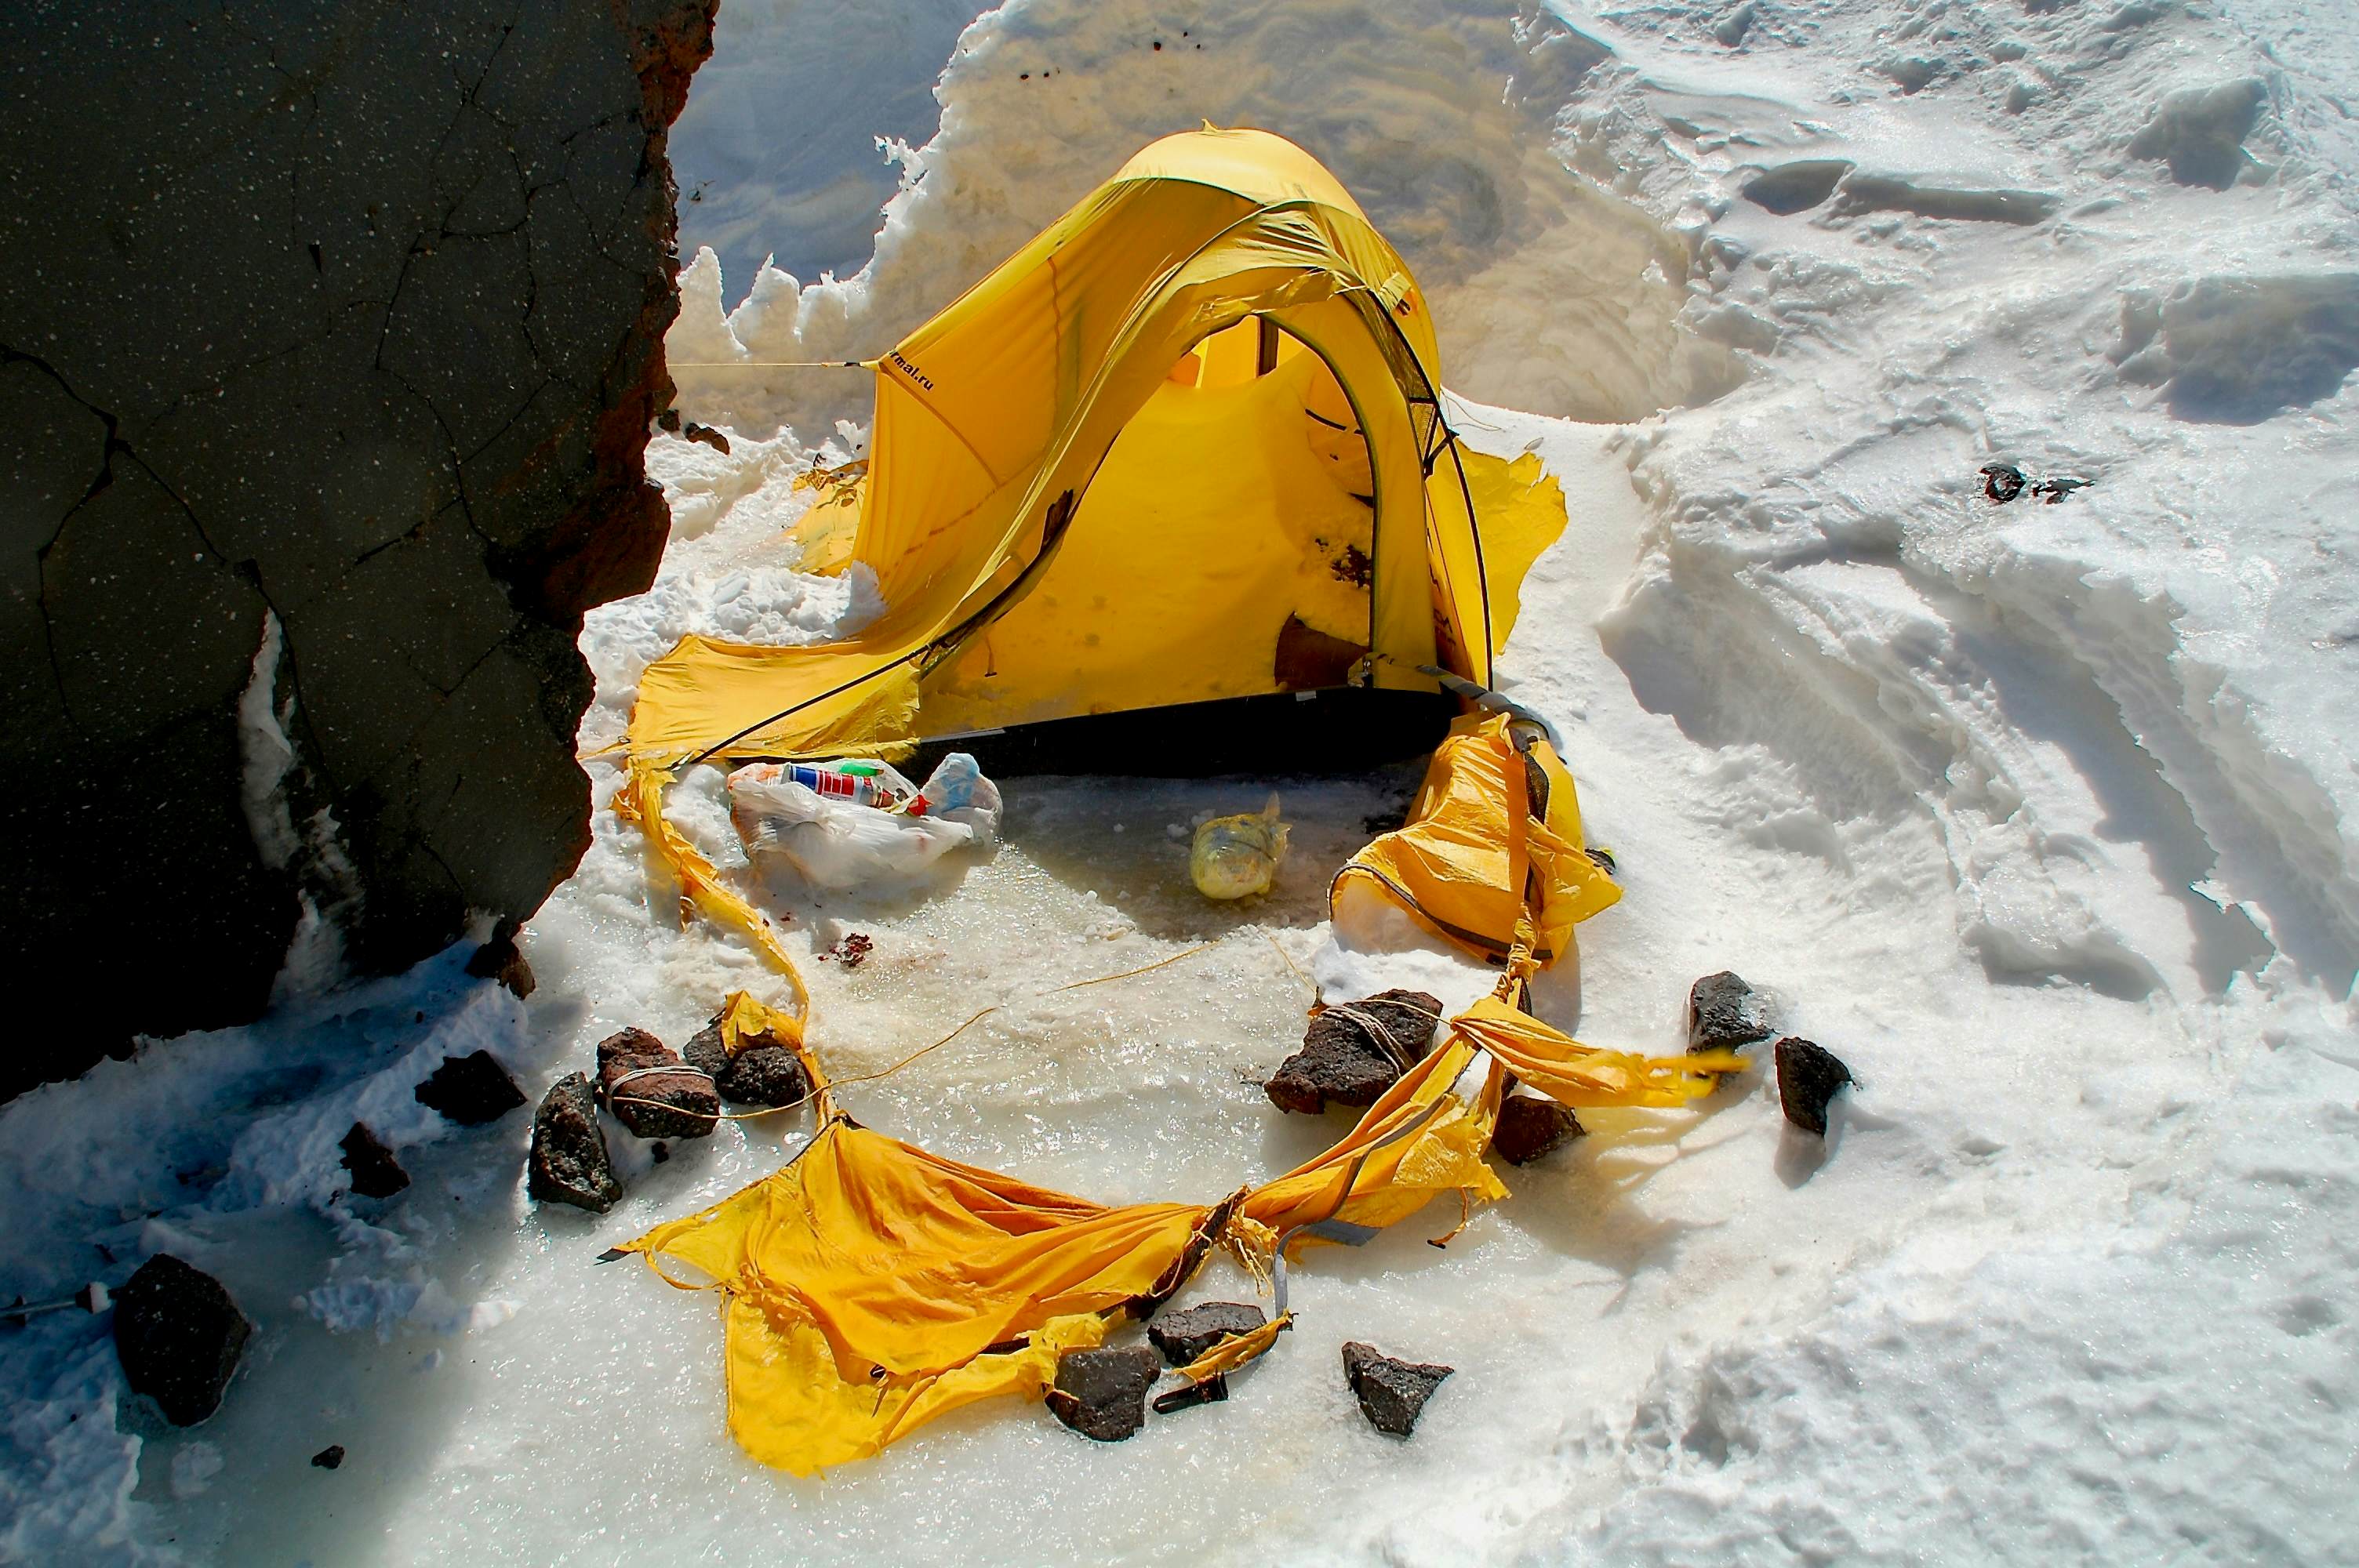 Zerfetztes Zelt an einem der Biwakplätze bei den Lenz Rocks auf ca. 4500m. Hier kann es sehr ungemütlich werden